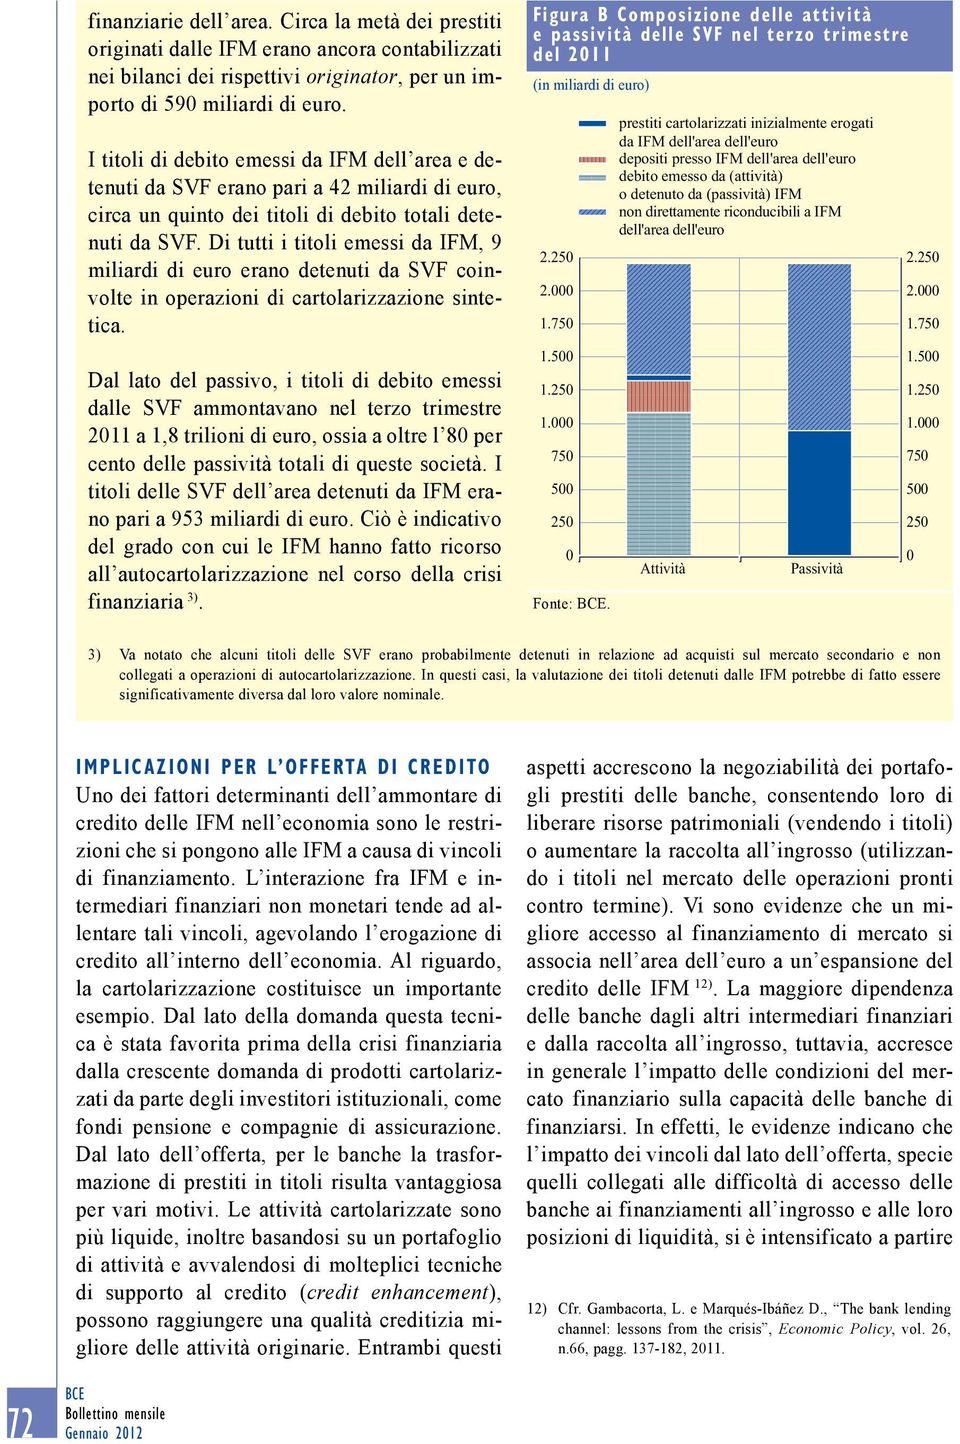 Di tutti i titoli emessi da IFM, 9 miliardi di euro erano detenuti da SVF coinvolte in operazioni di cartolarizzazione sintetica.